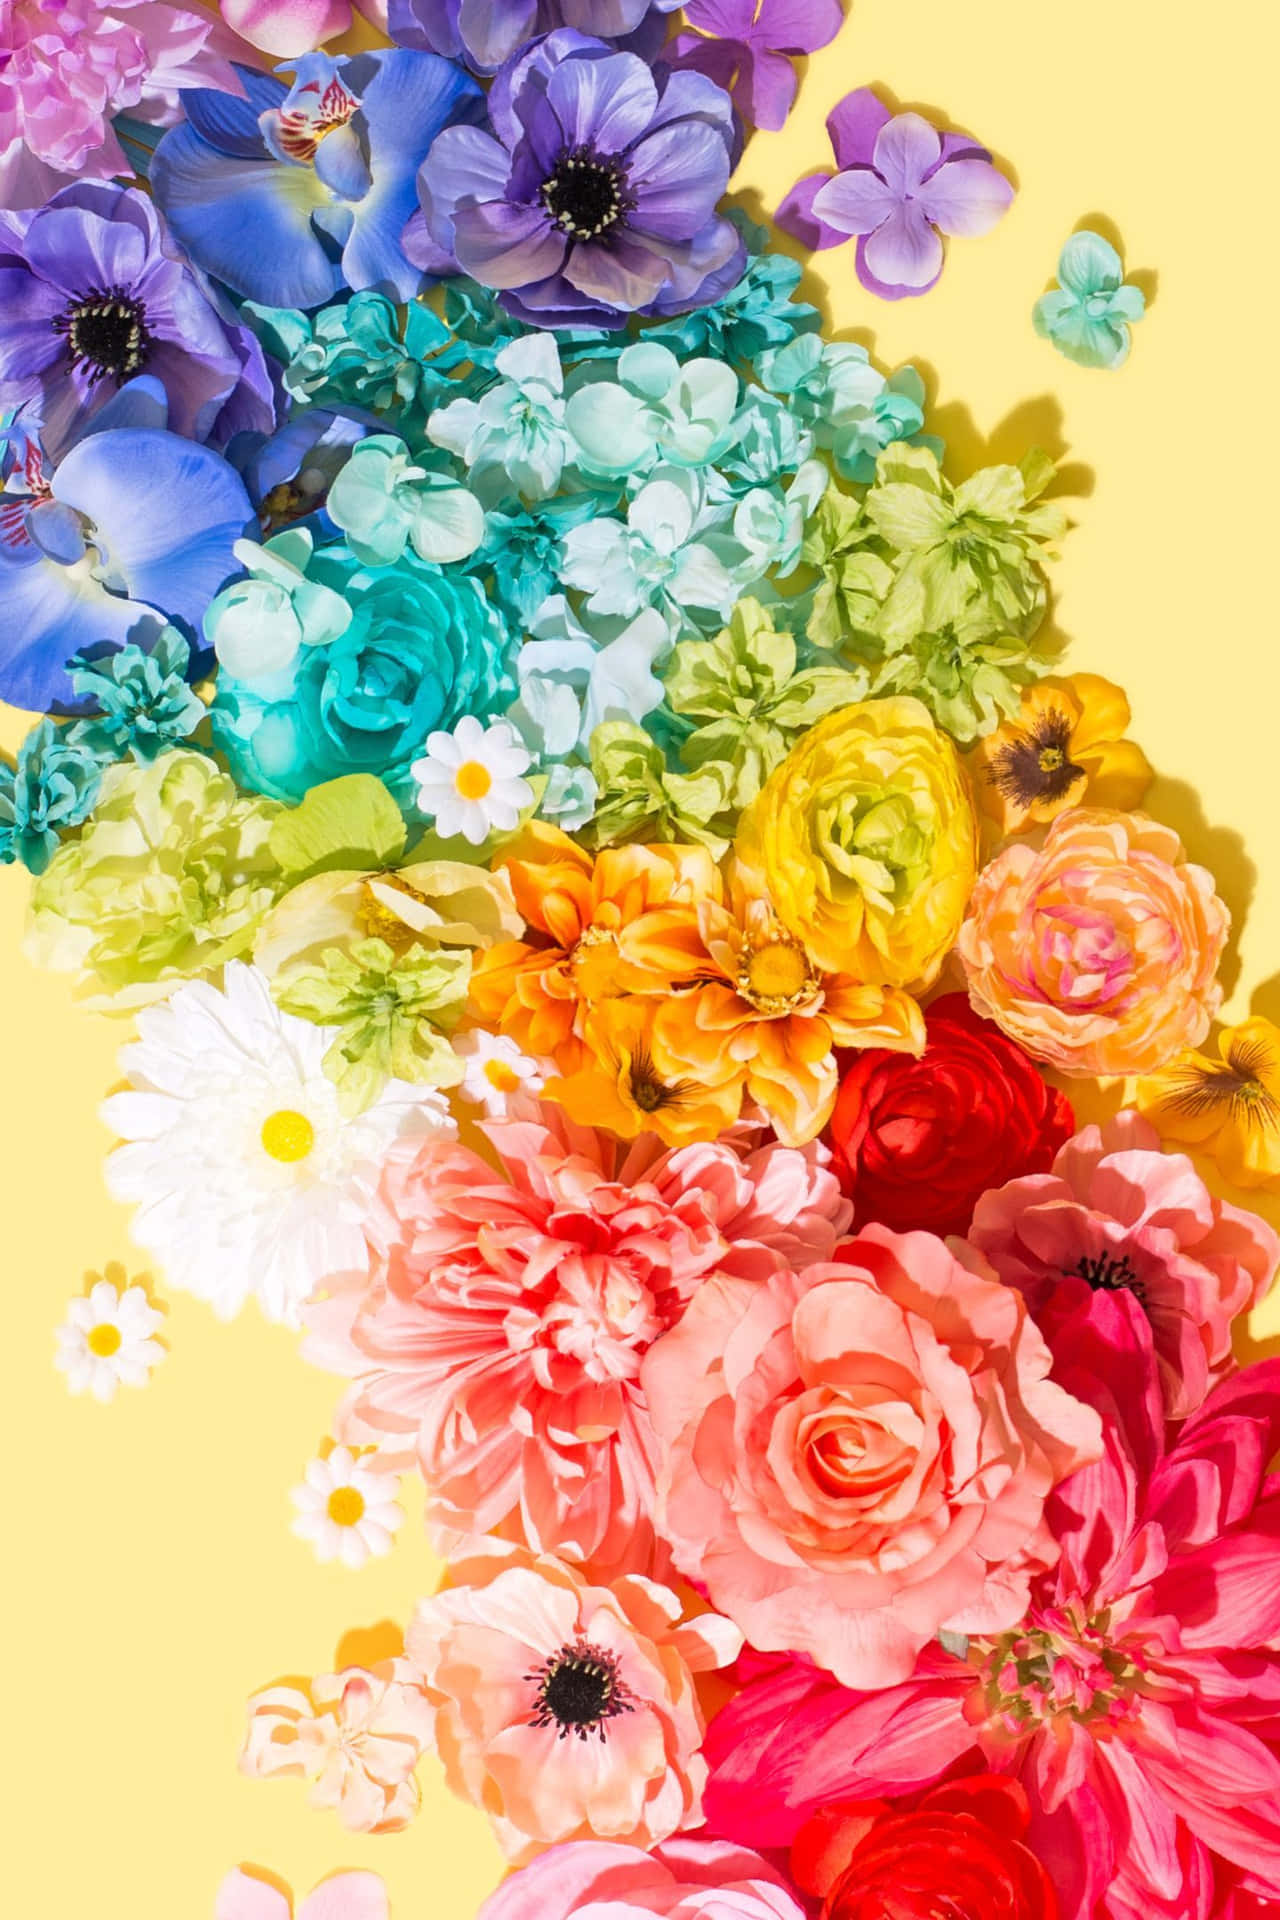 Einelebhafte Darstellung Von Schönen, Farbenfrohen Blumen Perfekt Für Dein Iphone. Wallpaper